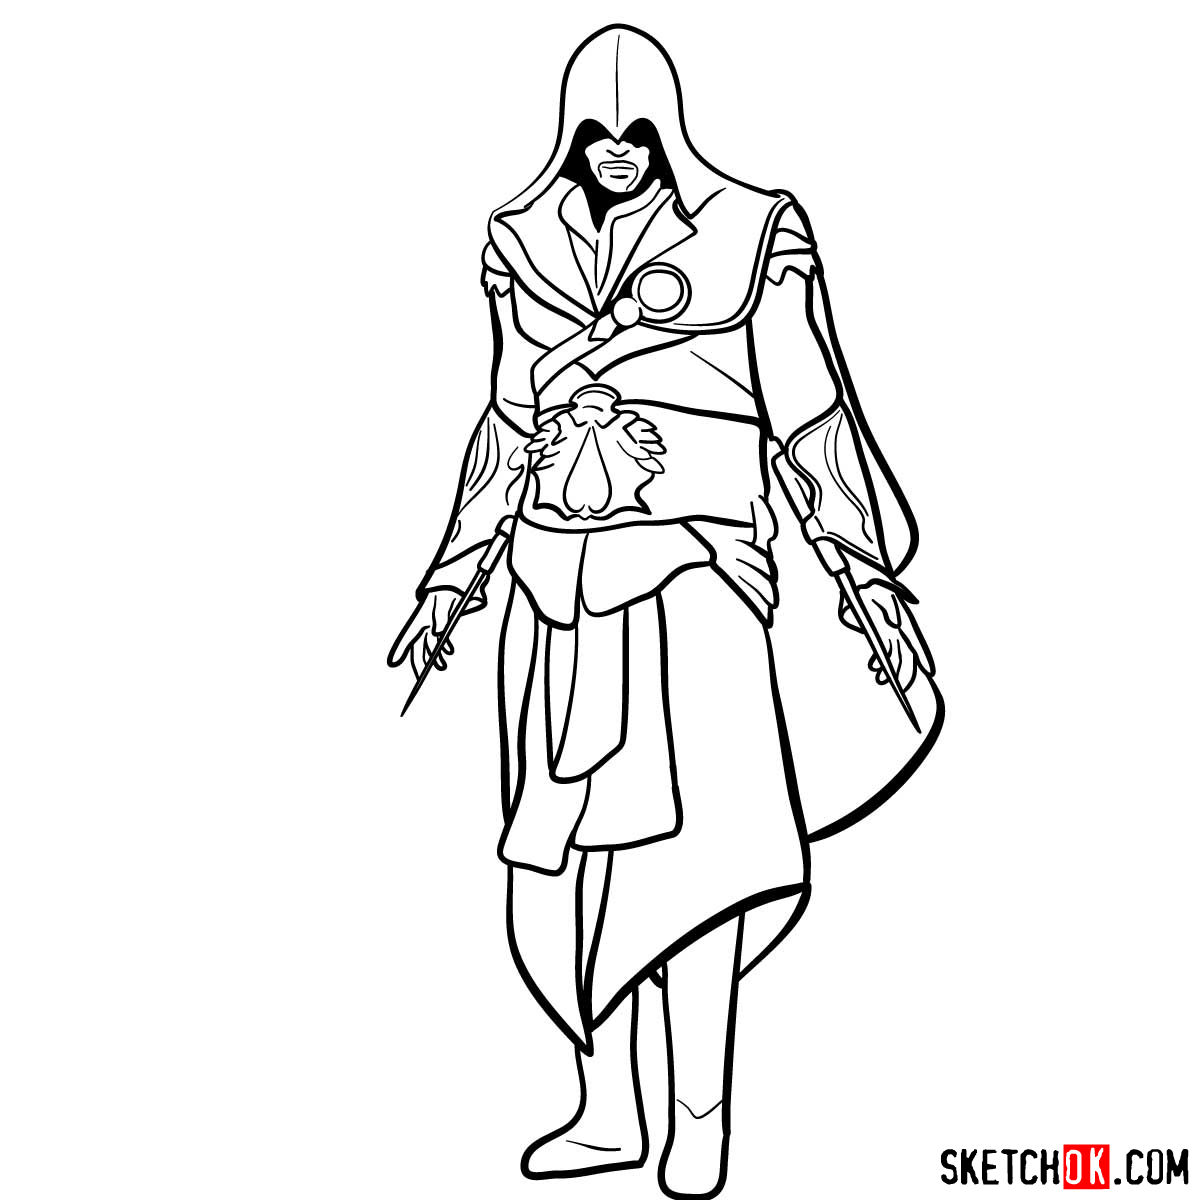 Assassins creed drawings